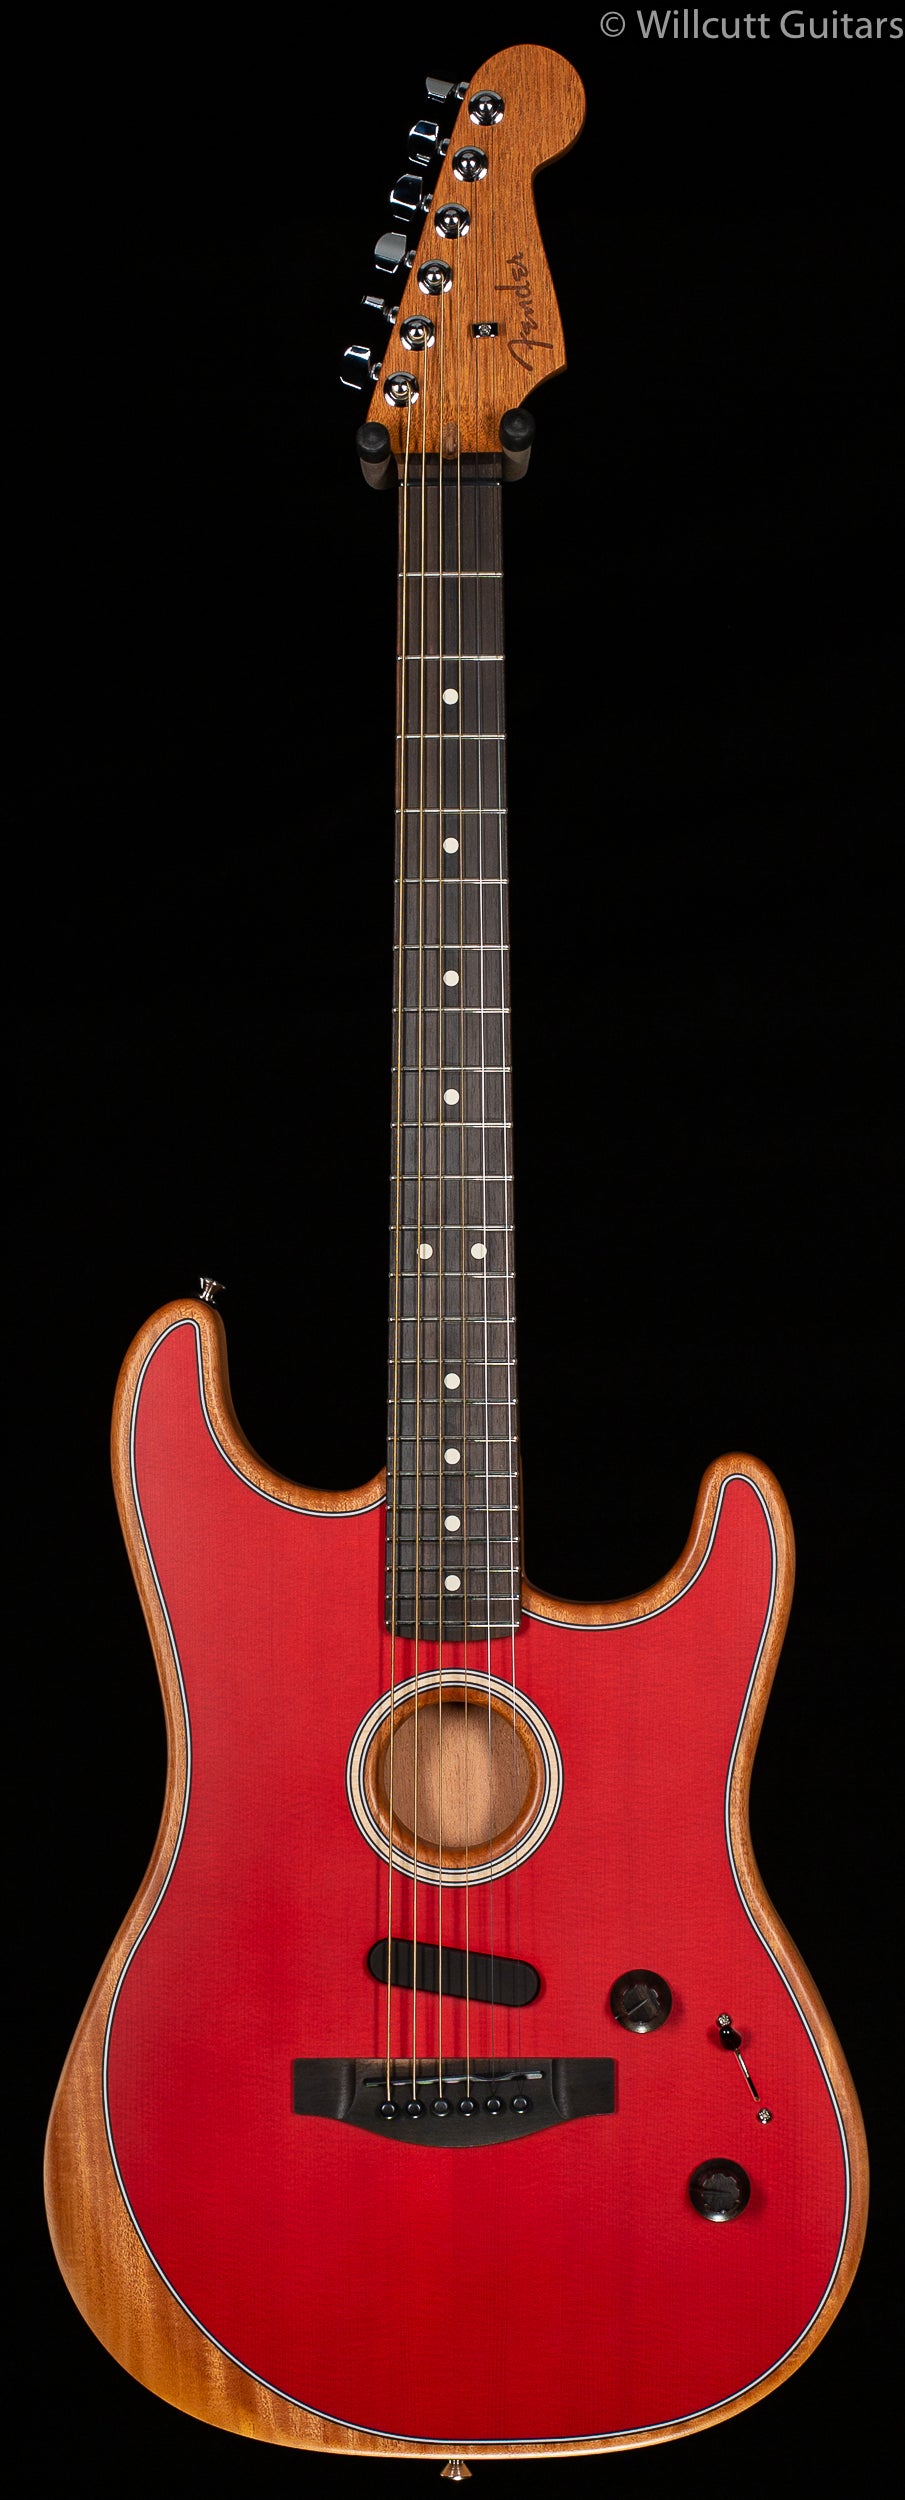 Fender American Acoustasonic Stratocaster Dakota Red - Willcutt Guitars